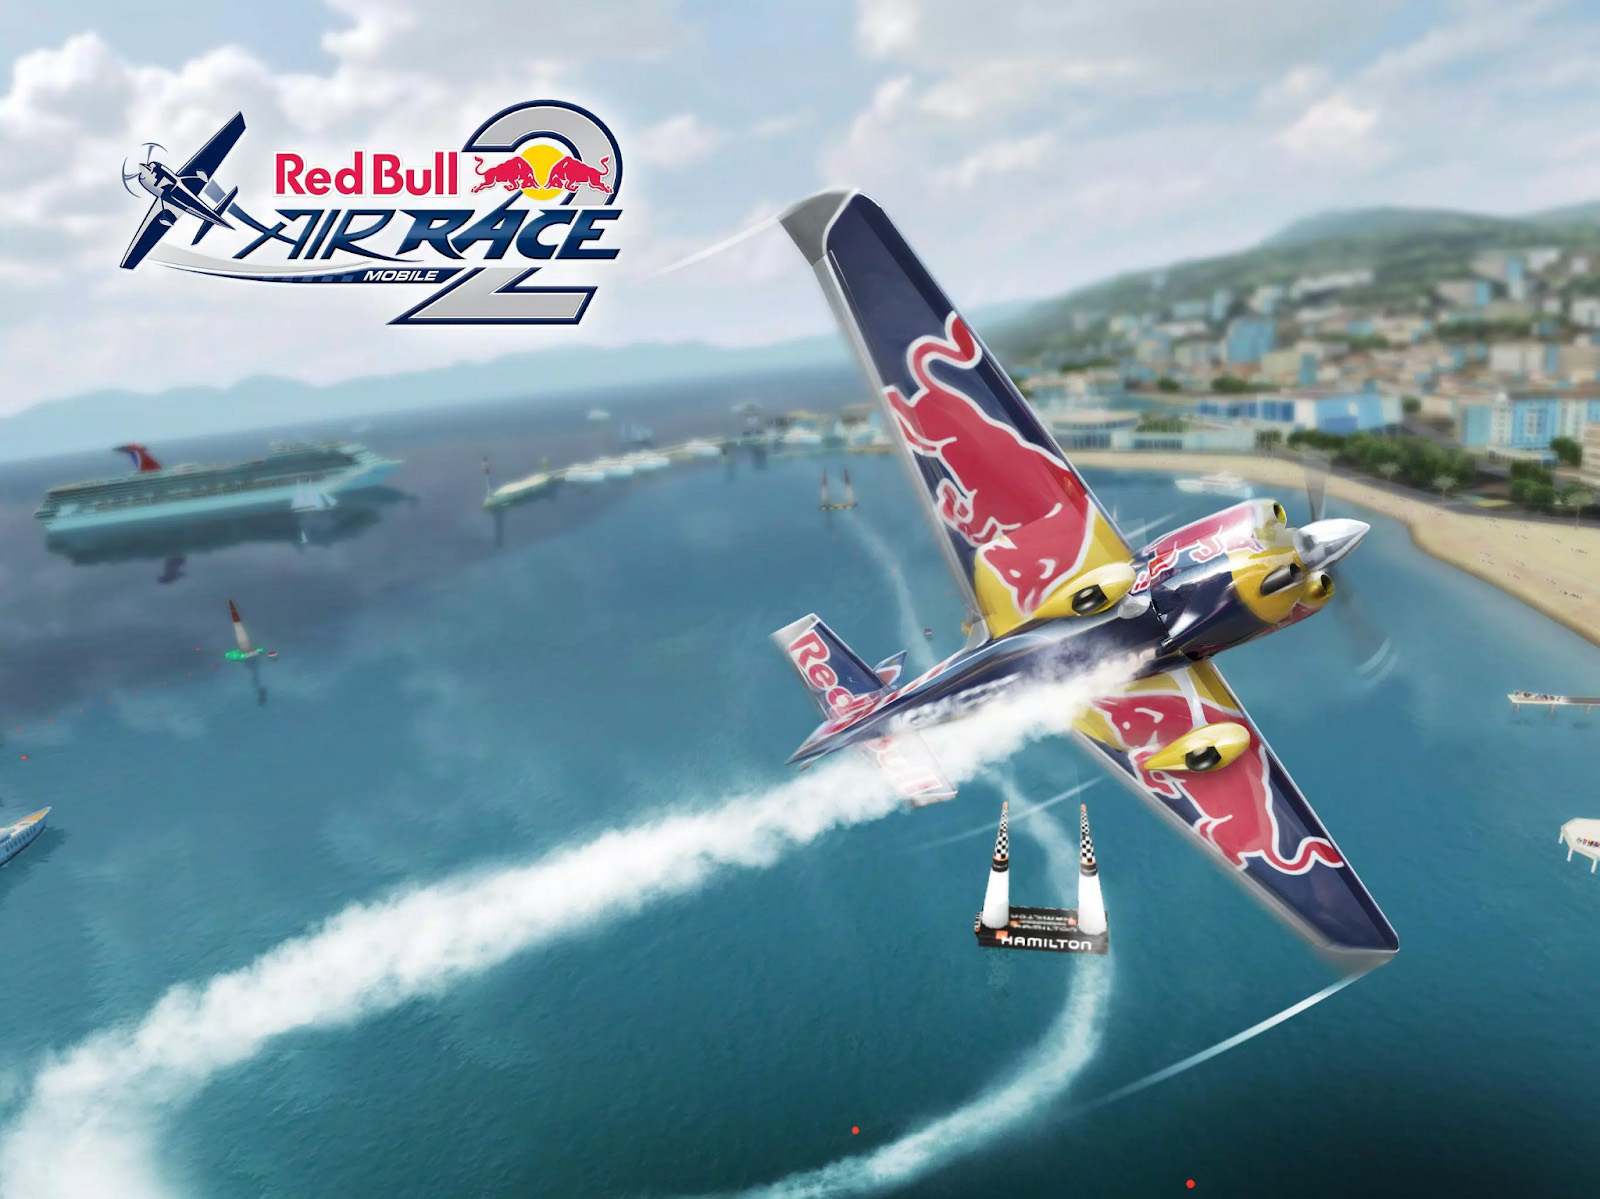 Bay lượn trên bầu trời cùng Red Bull Air Race 2